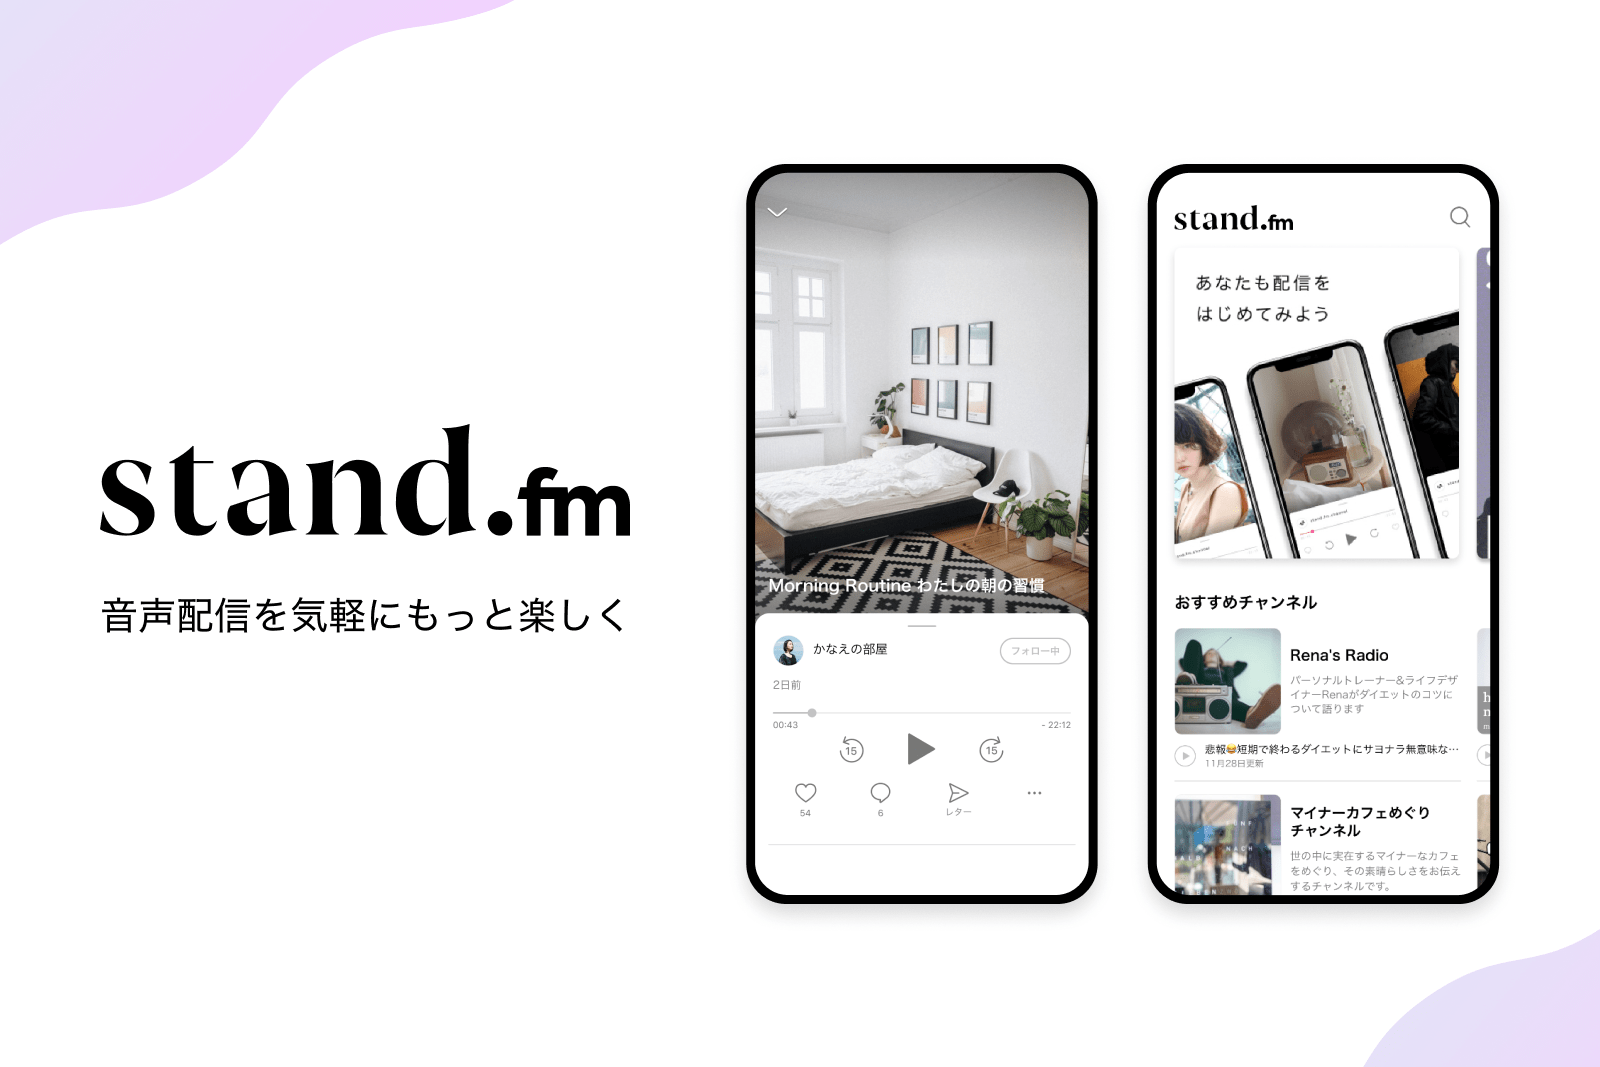 音声配信アプリ「stand.fm」が5億円調達、配信者への収益還元プログラムも開始